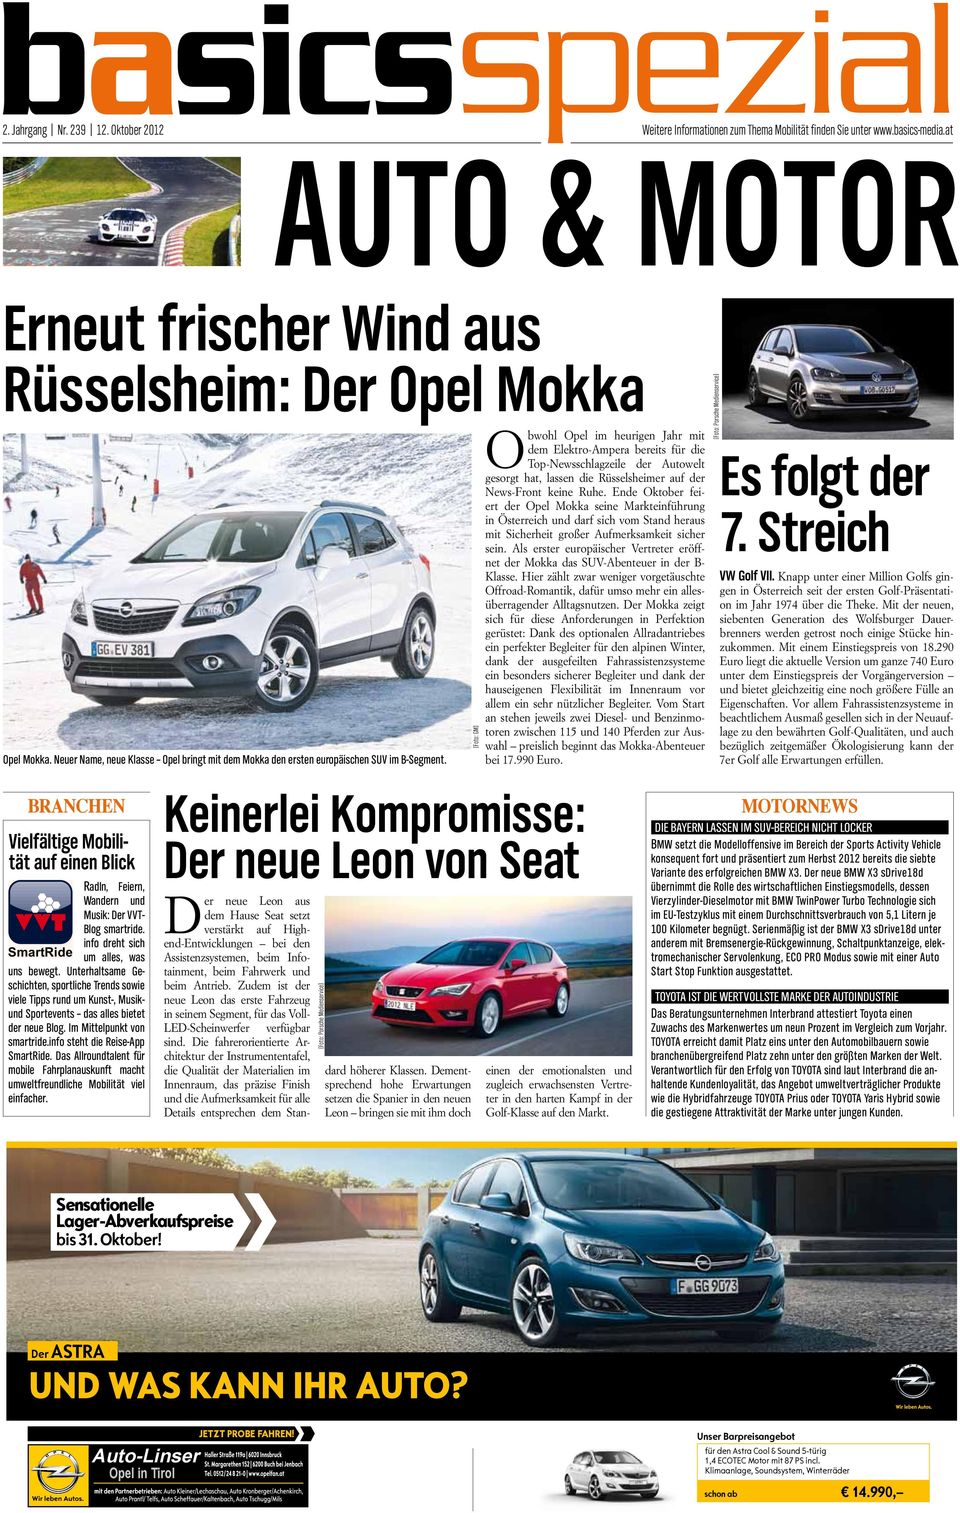 [Foto: GM] Obwohl Opel im heurigen Jahr mit dem Elektro-Ampera bereits für die Top-Newsschlagzeile der Autowelt gesorgt hat, lassen die Rüsselsheimer auf der News-Front keine Ruhe.